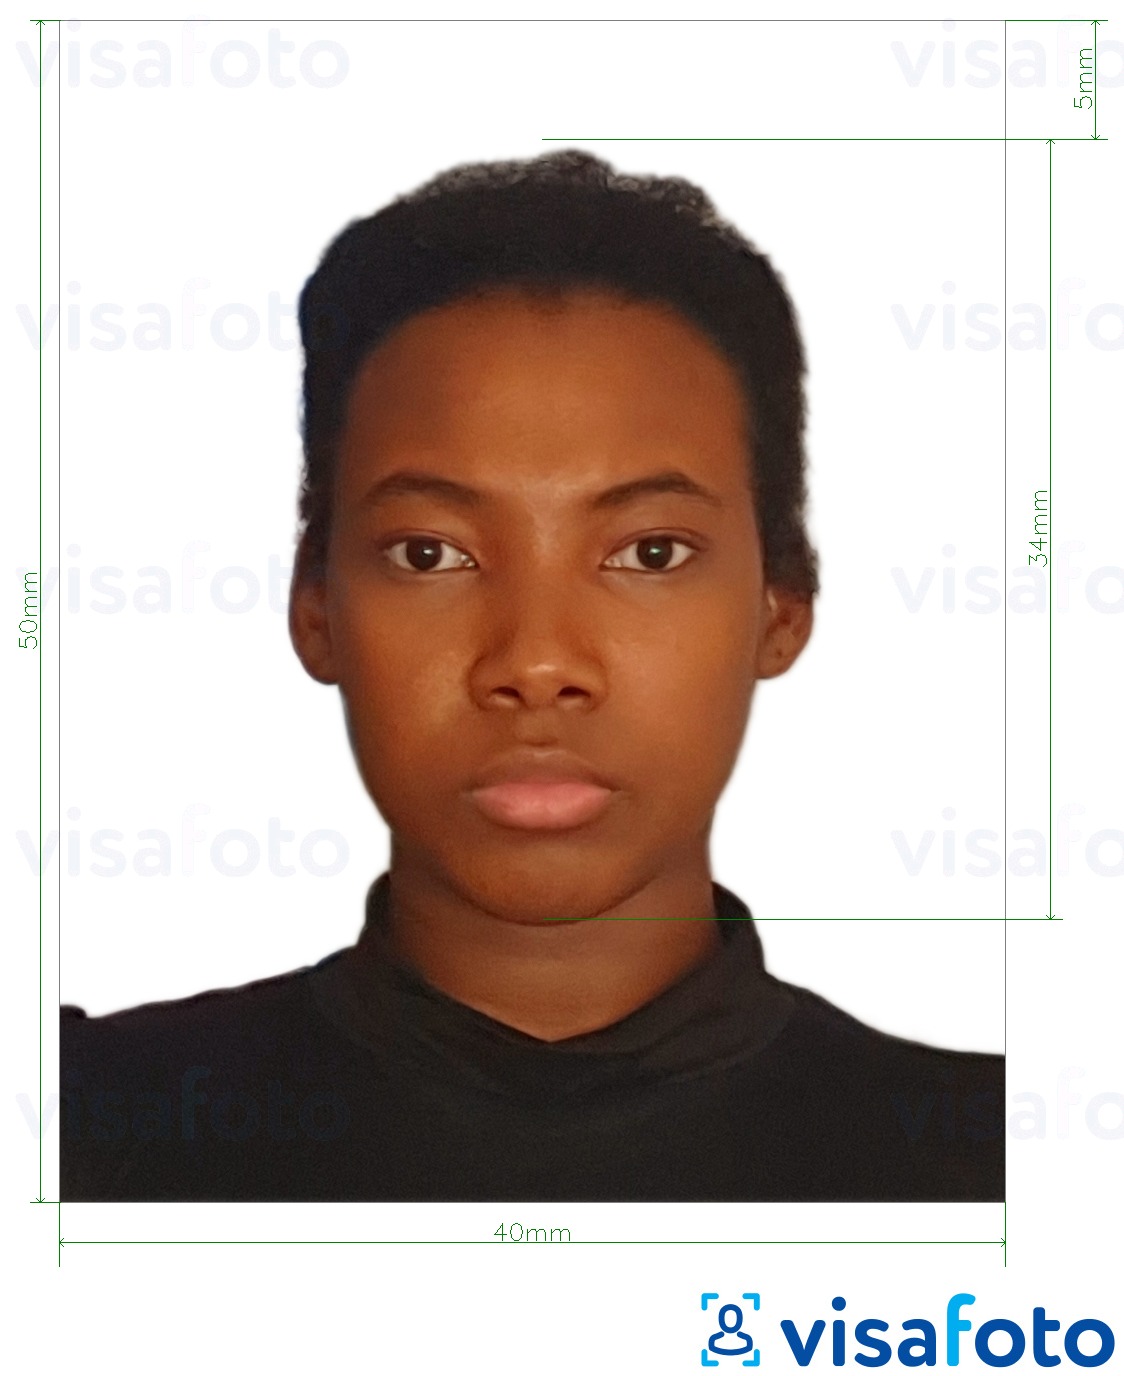  Dominikaani Vabariigi viisa 4x5 cm fotonäidis koos täpse infoga mõõtude kohta.